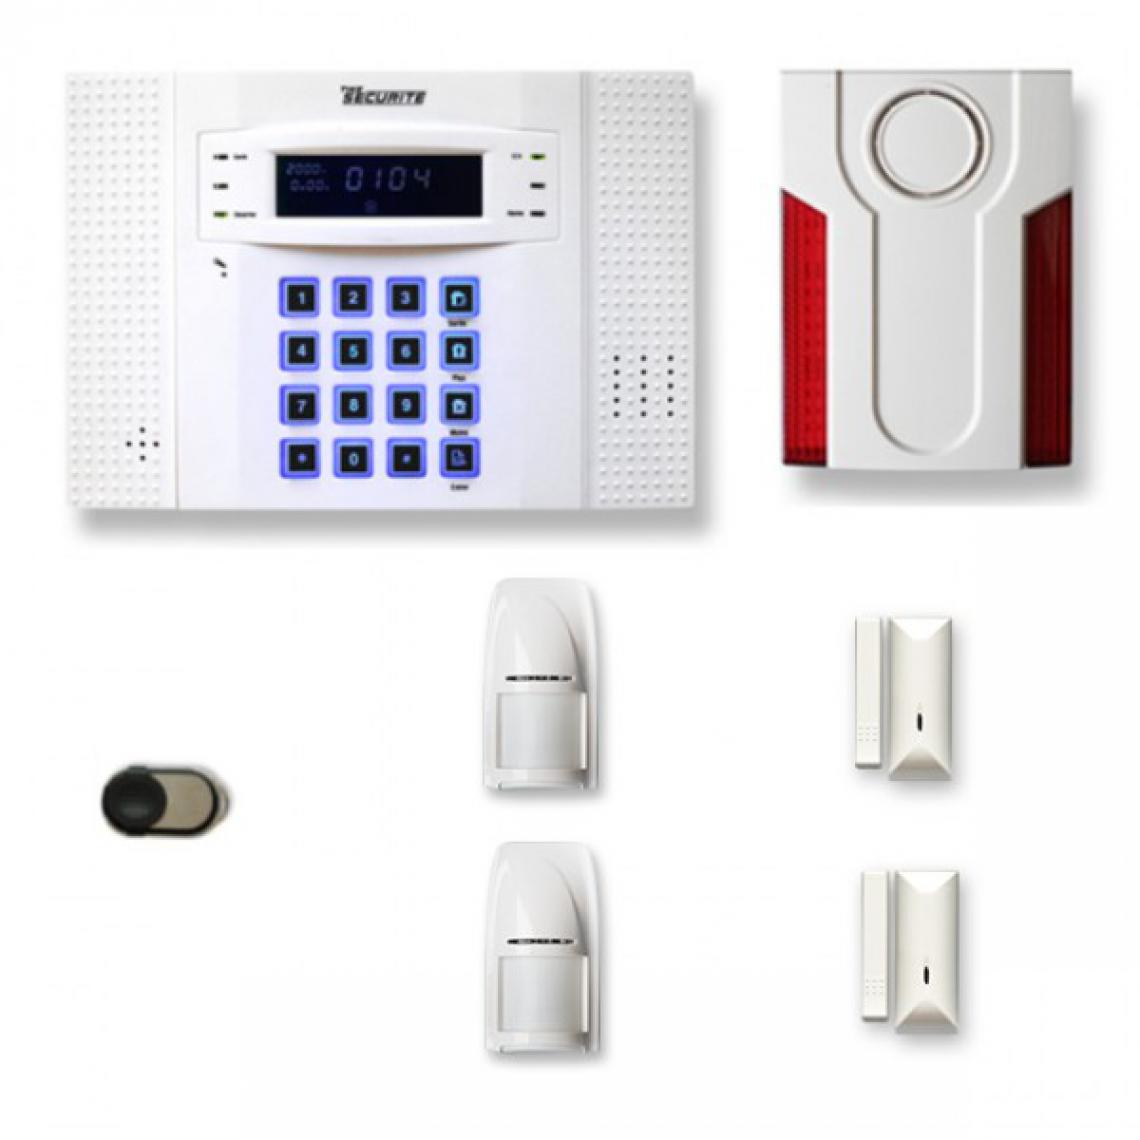 Tike Securite - Alarme maison sans fil DNB29 Compatible Box internet - Alarme connectée